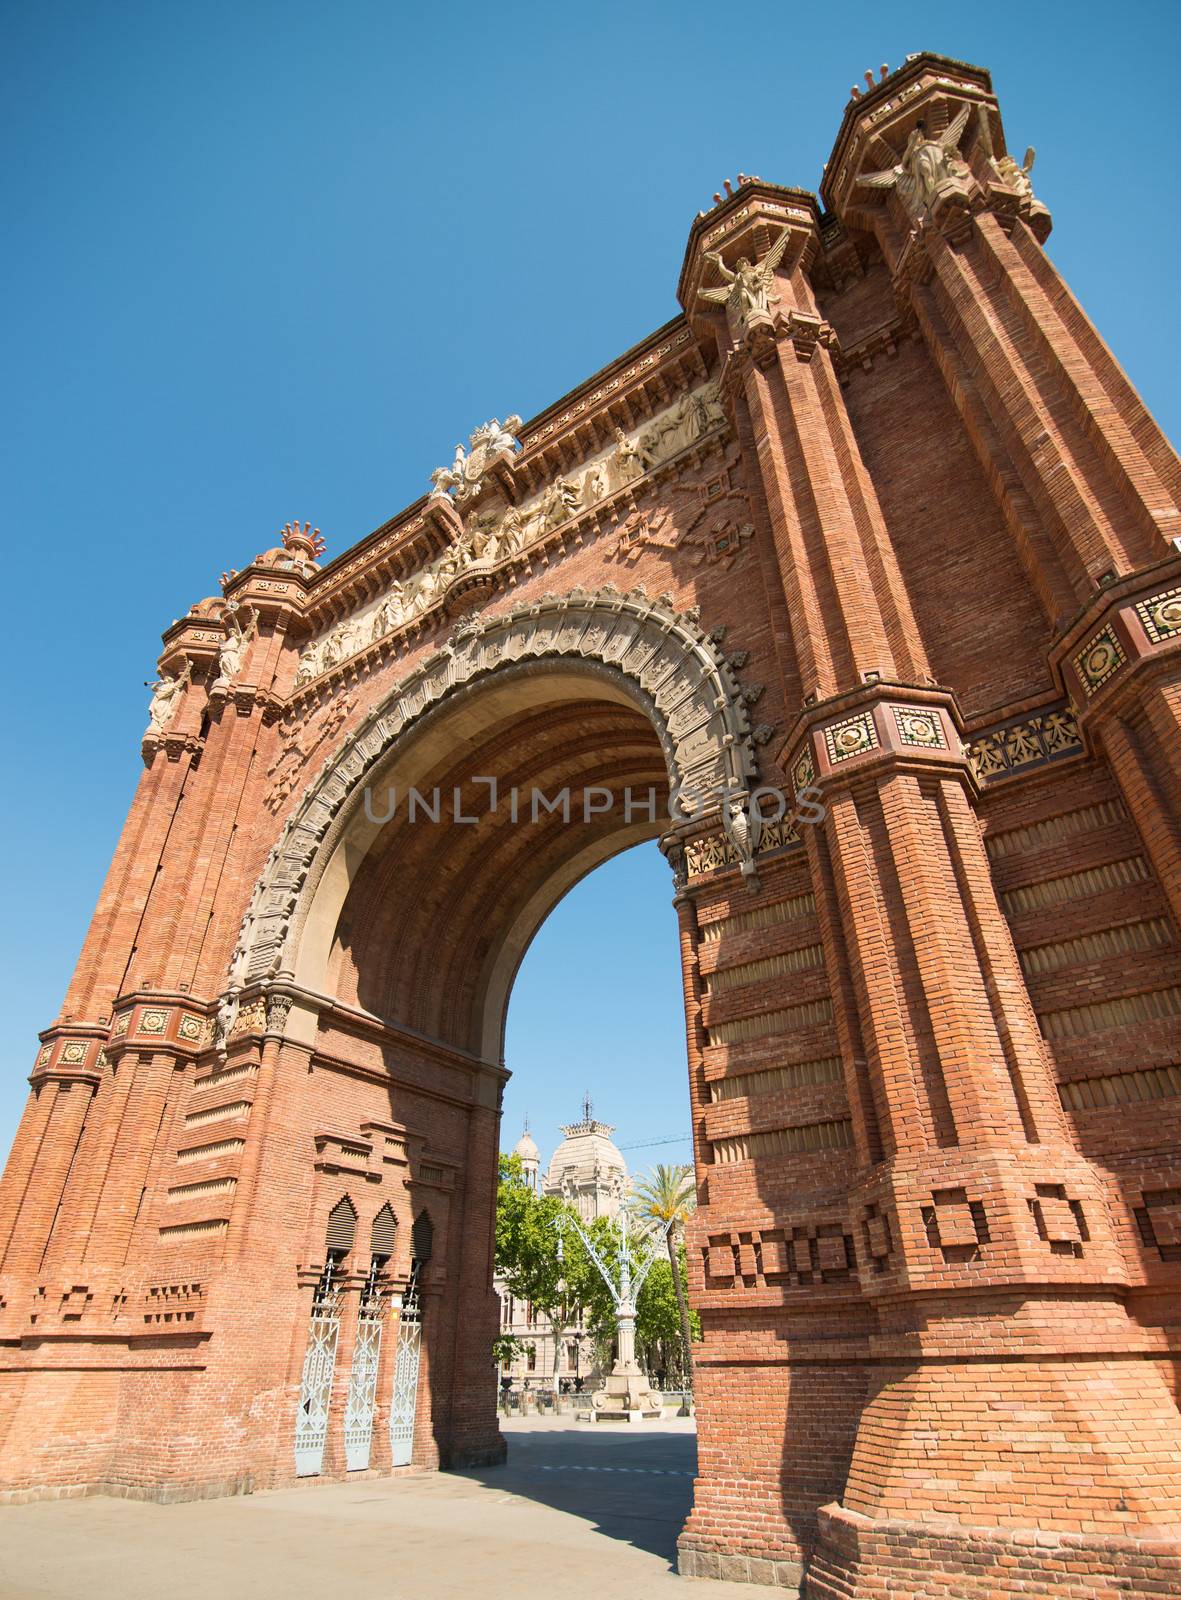 Triumphal Arch by GekaSkr